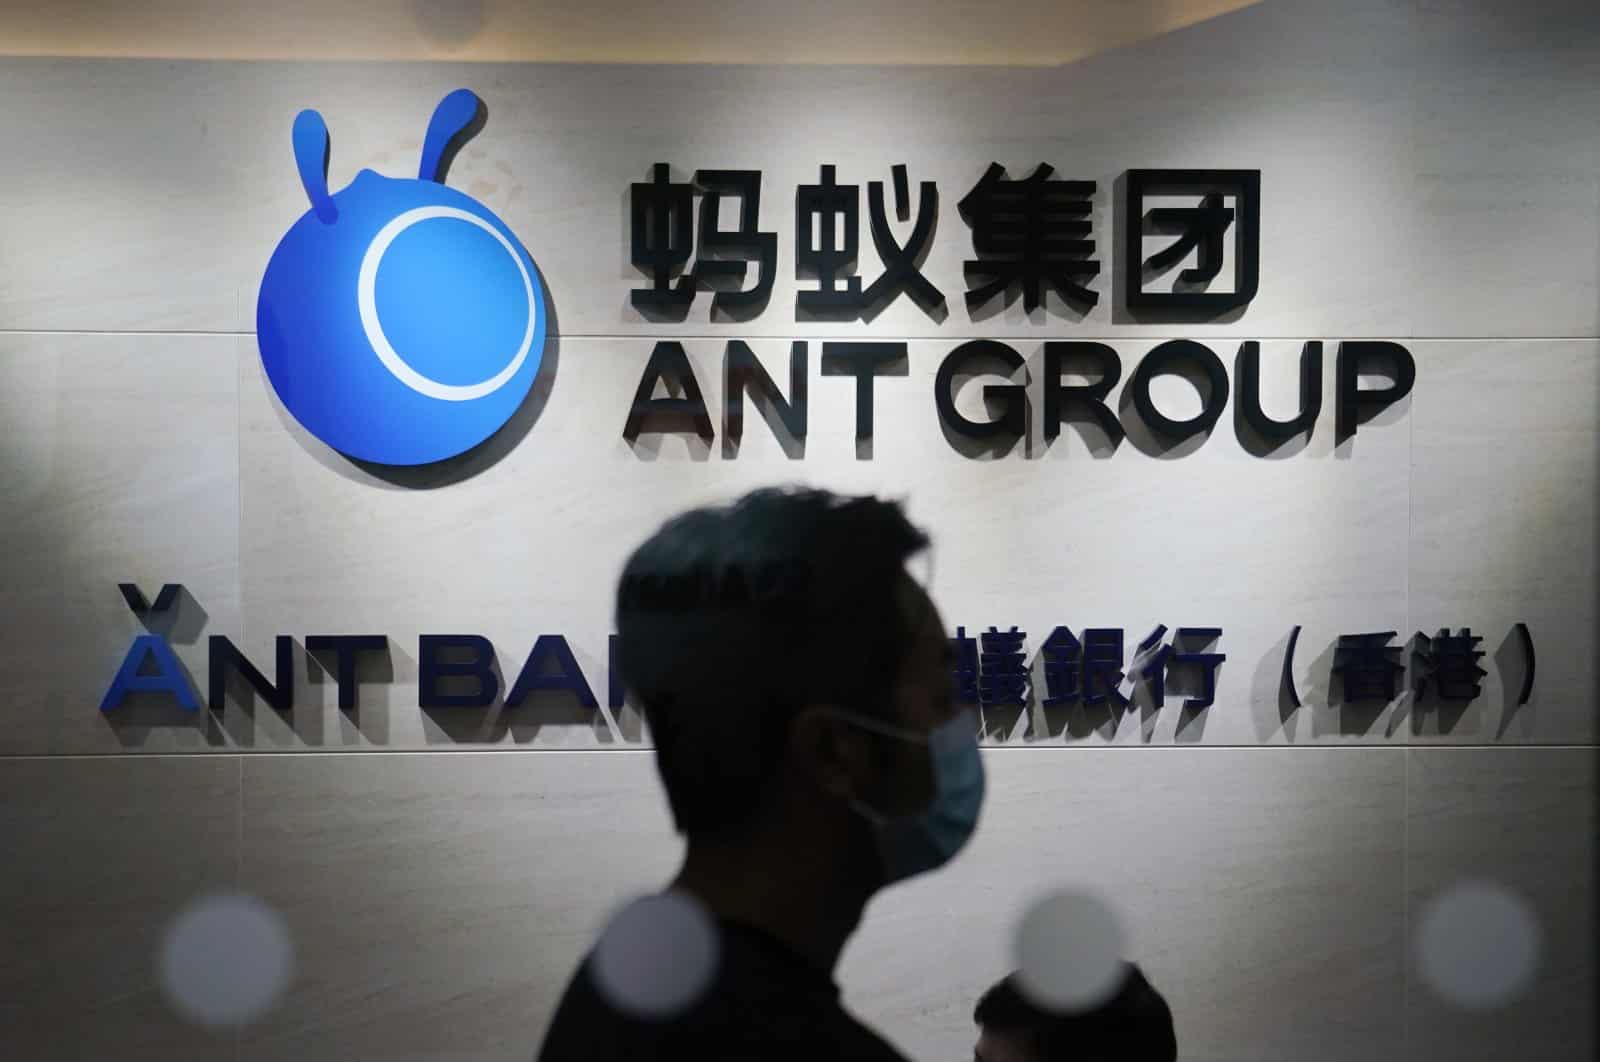 Photographie du logo d'Ant Group avec une silhouette humaine. Chongqing Ant incarne la nouvelle filiale d'Ant Group.